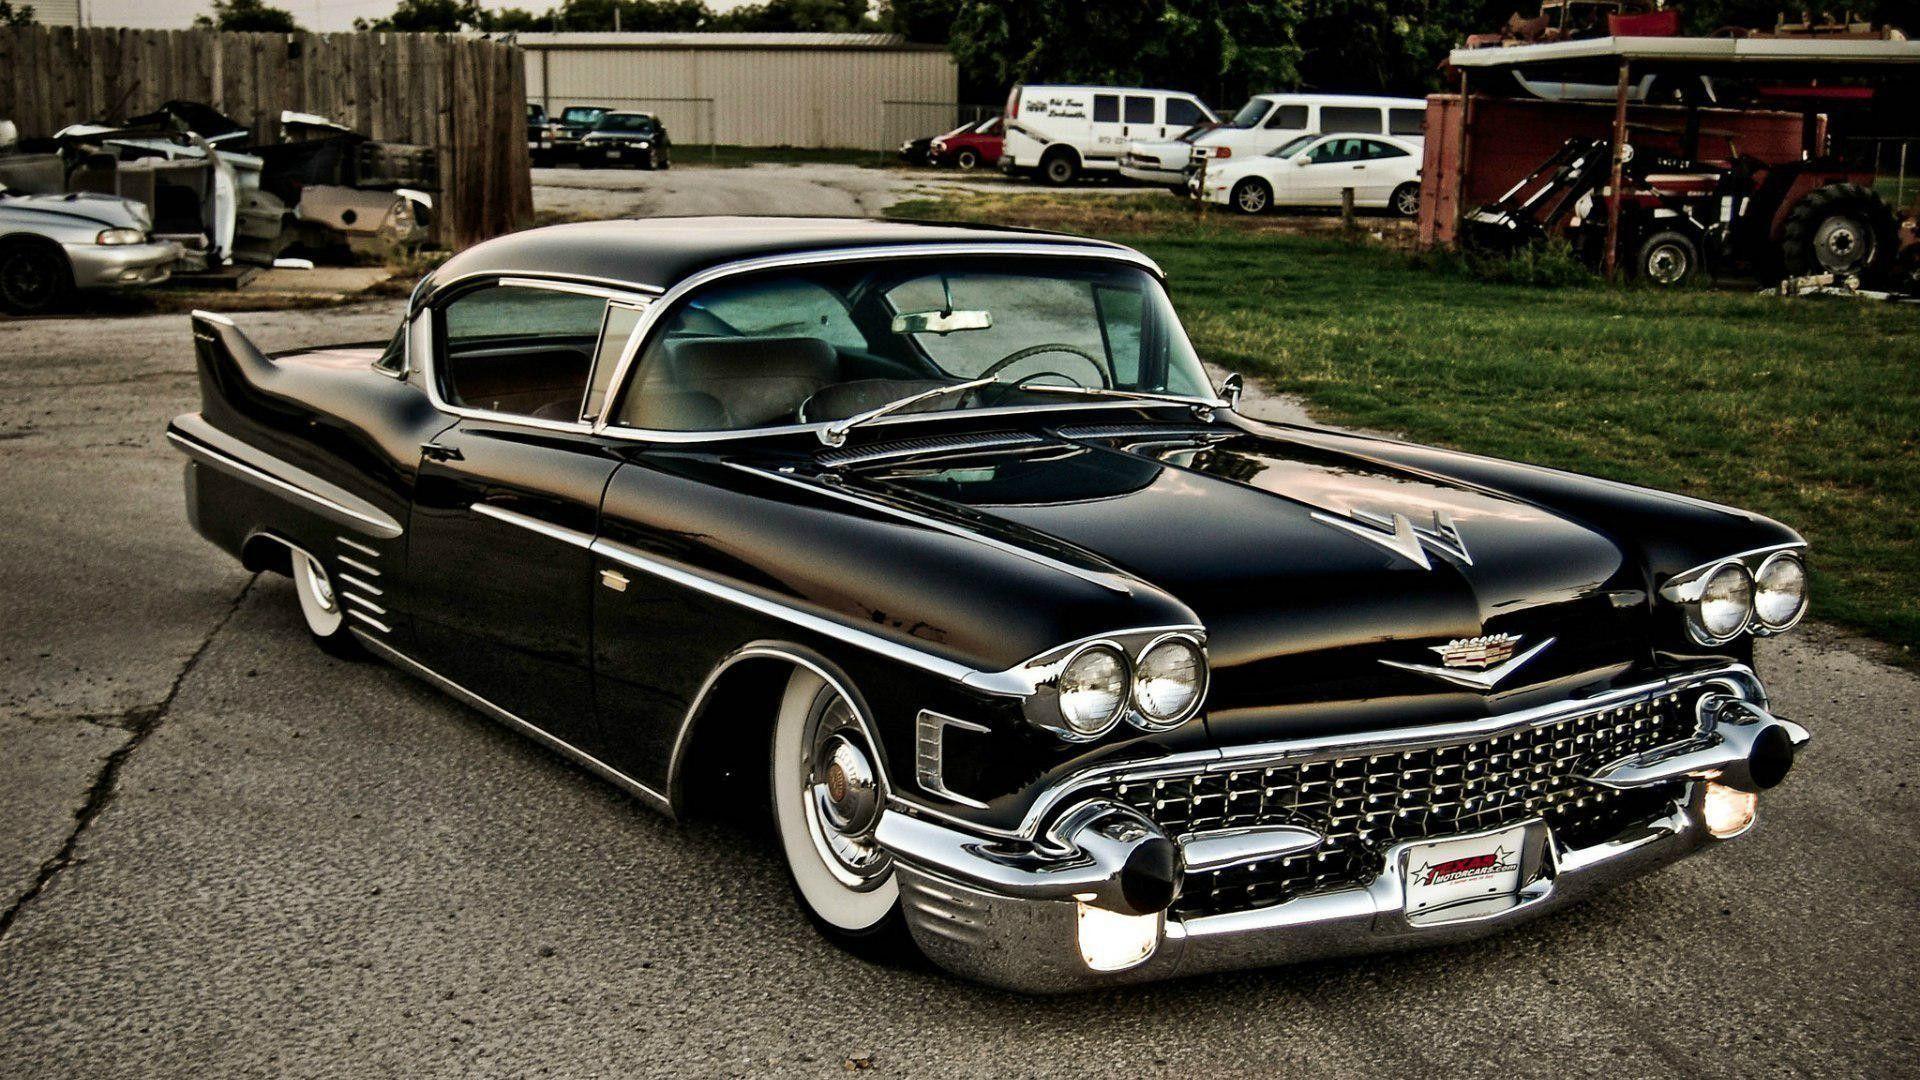 Classic Cadillac Wallpapers - Top Những Hình Ảnh Đẹp